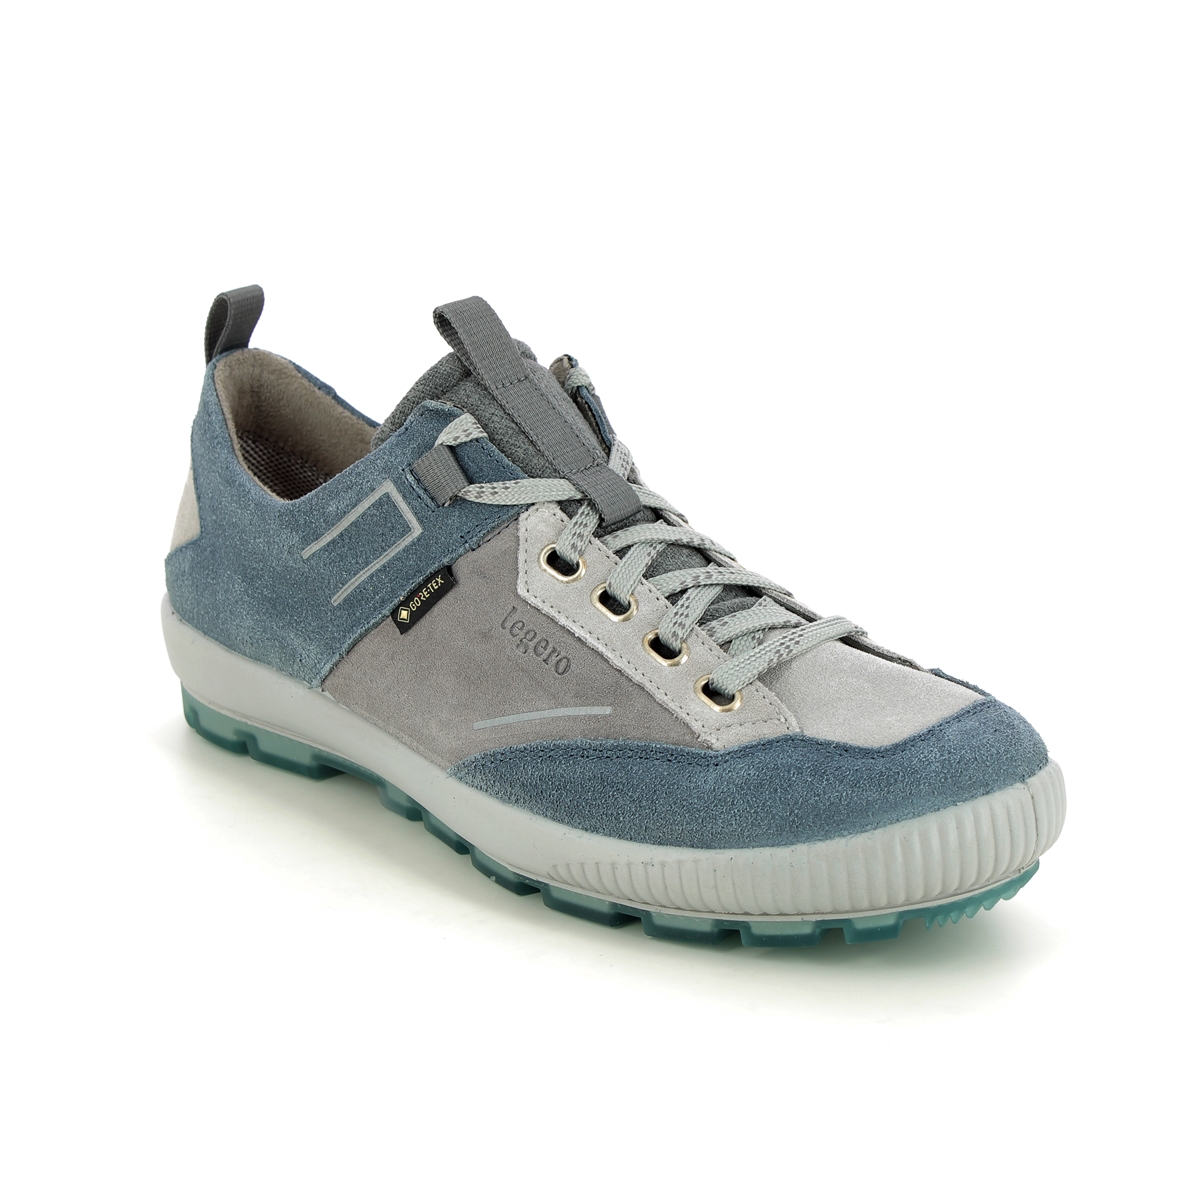 Legero Tanaro Trek Gtx Blue Womens Walking Shoes 2000126-8500 In Size 6 In Plain Blue